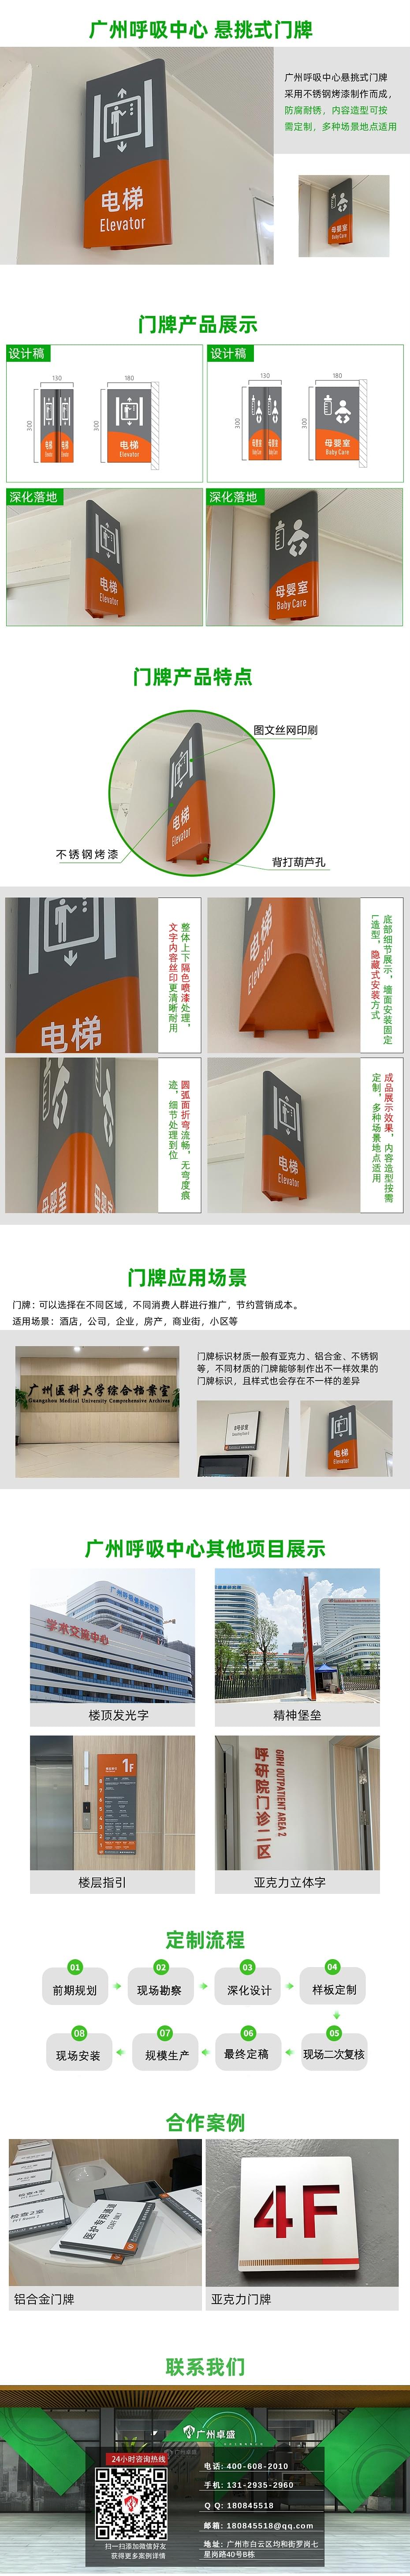 广州呼吸中心-悬挑式门牌